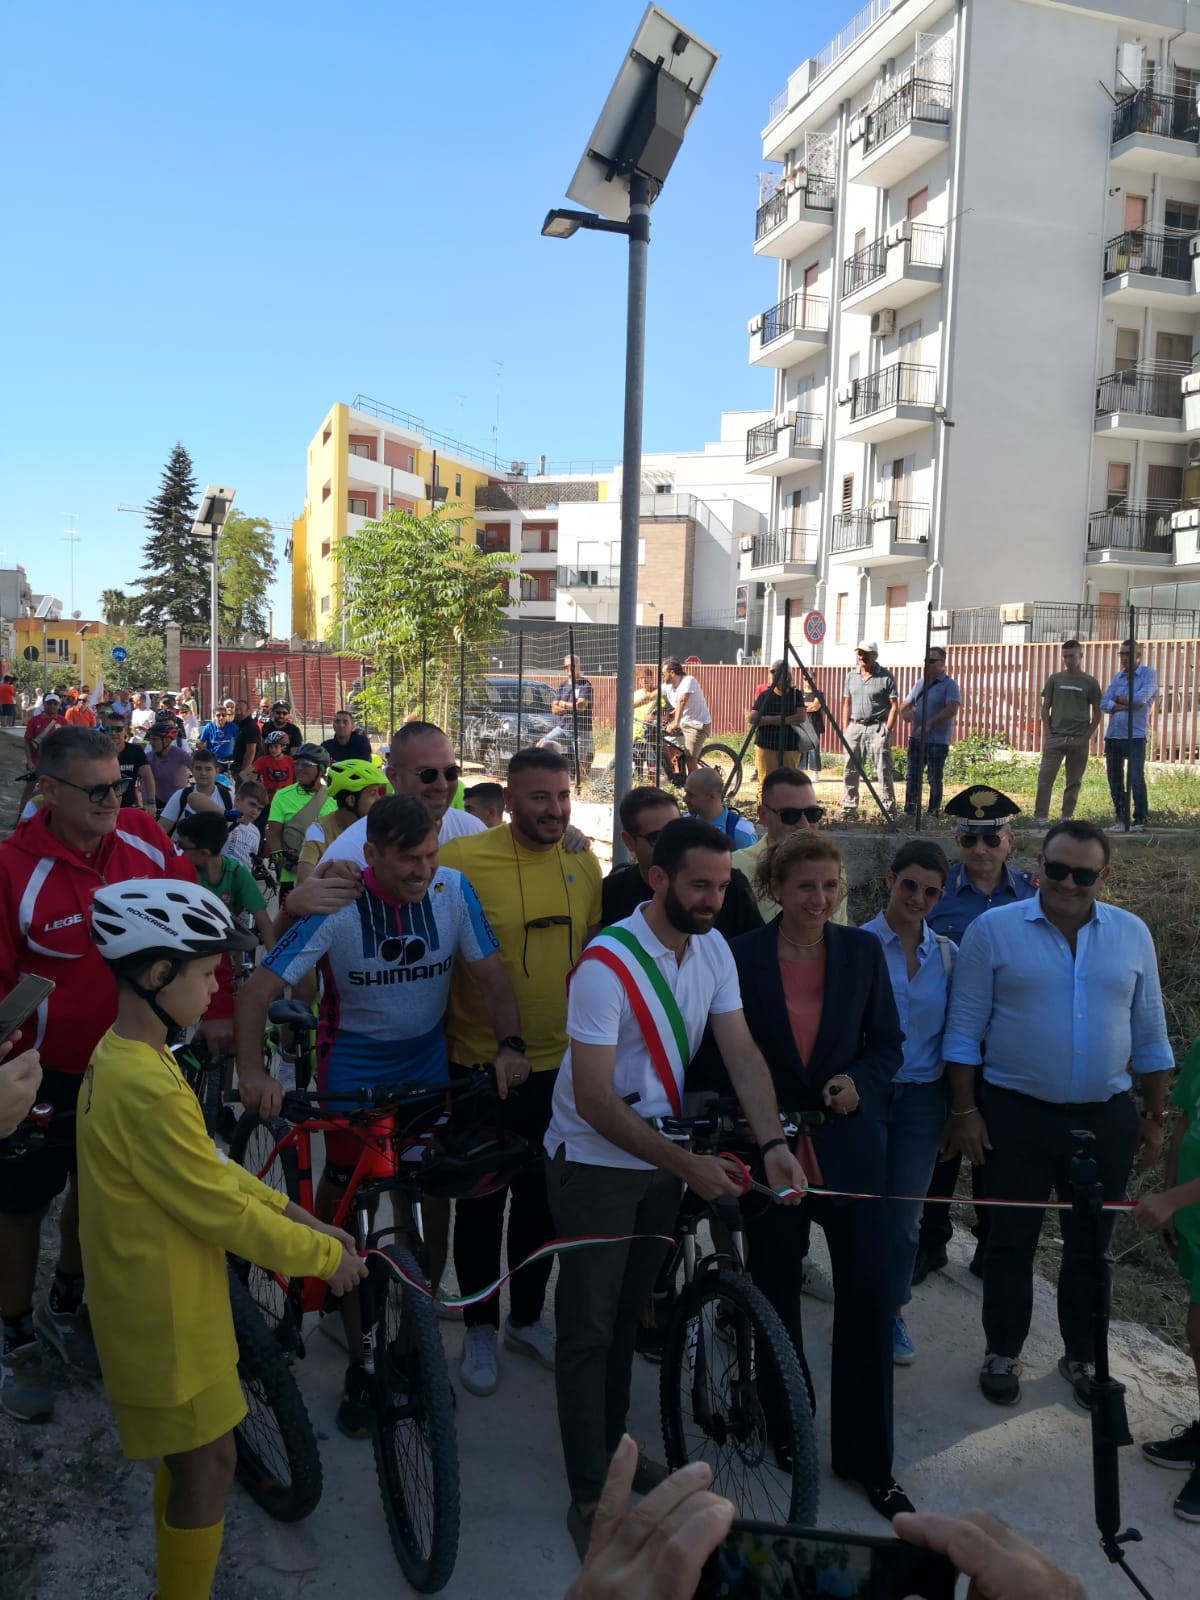 Galleria Nuova pista ciclabile a Castellaneta finanziata dalla Regione: un passo avanti per la promozione della mobilità lenta e sostenibile in Puglia - Diapositiva 3 di 4